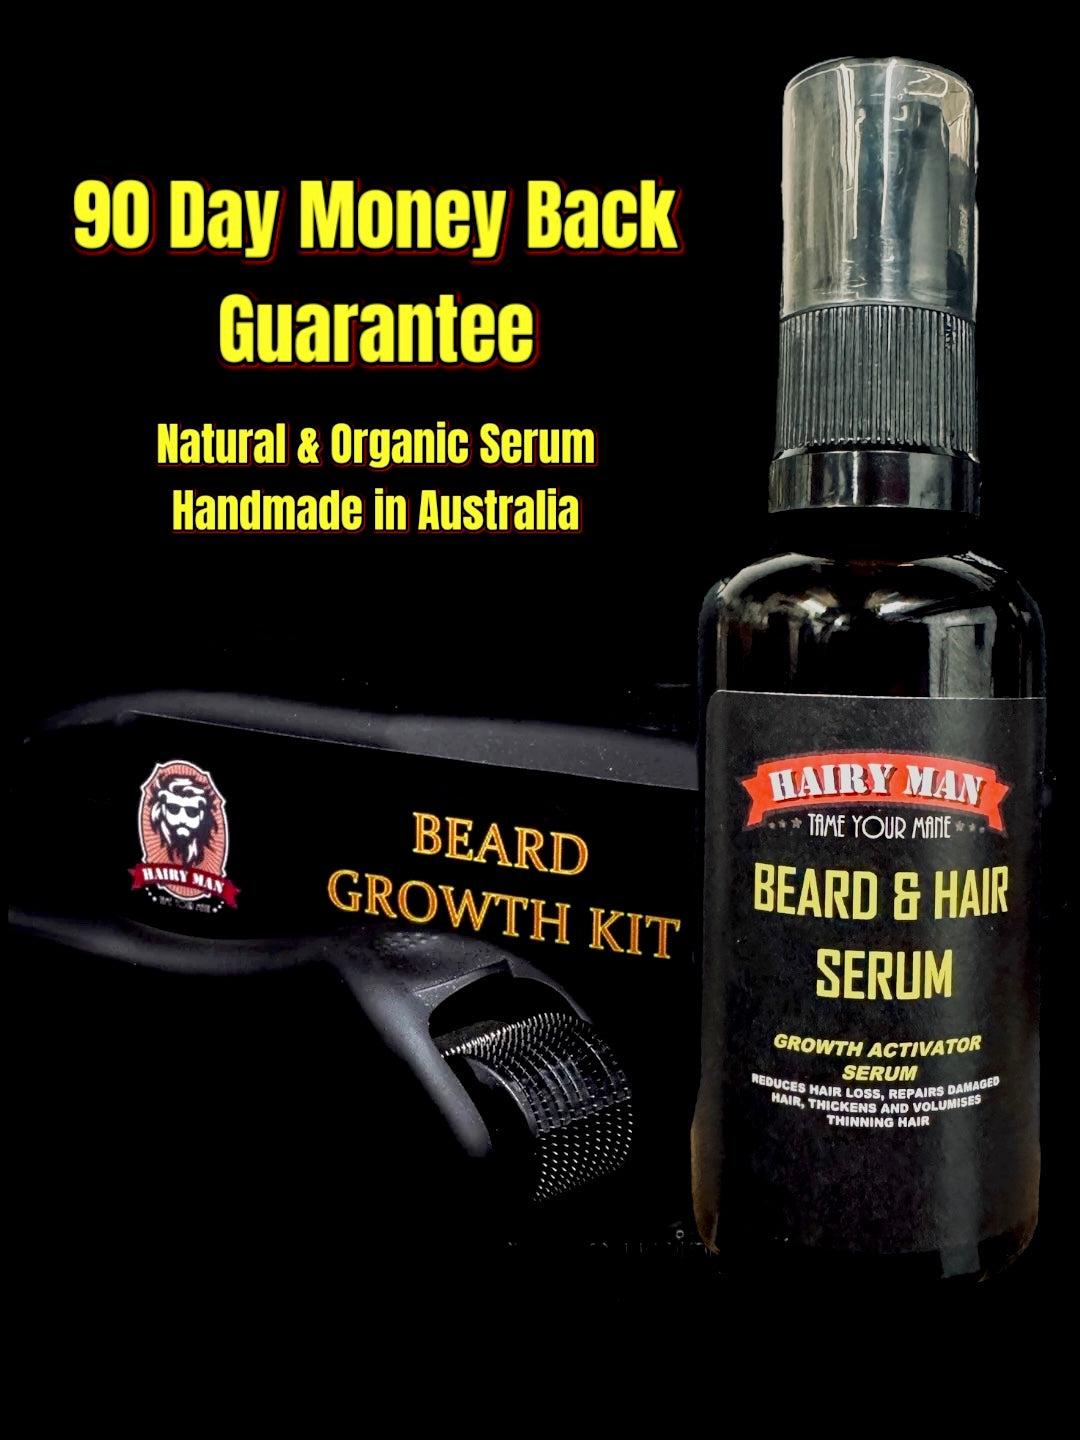 Beard growth kit - handmade in australia - natural and organic ingredients- mens grooming products - dermaroller 